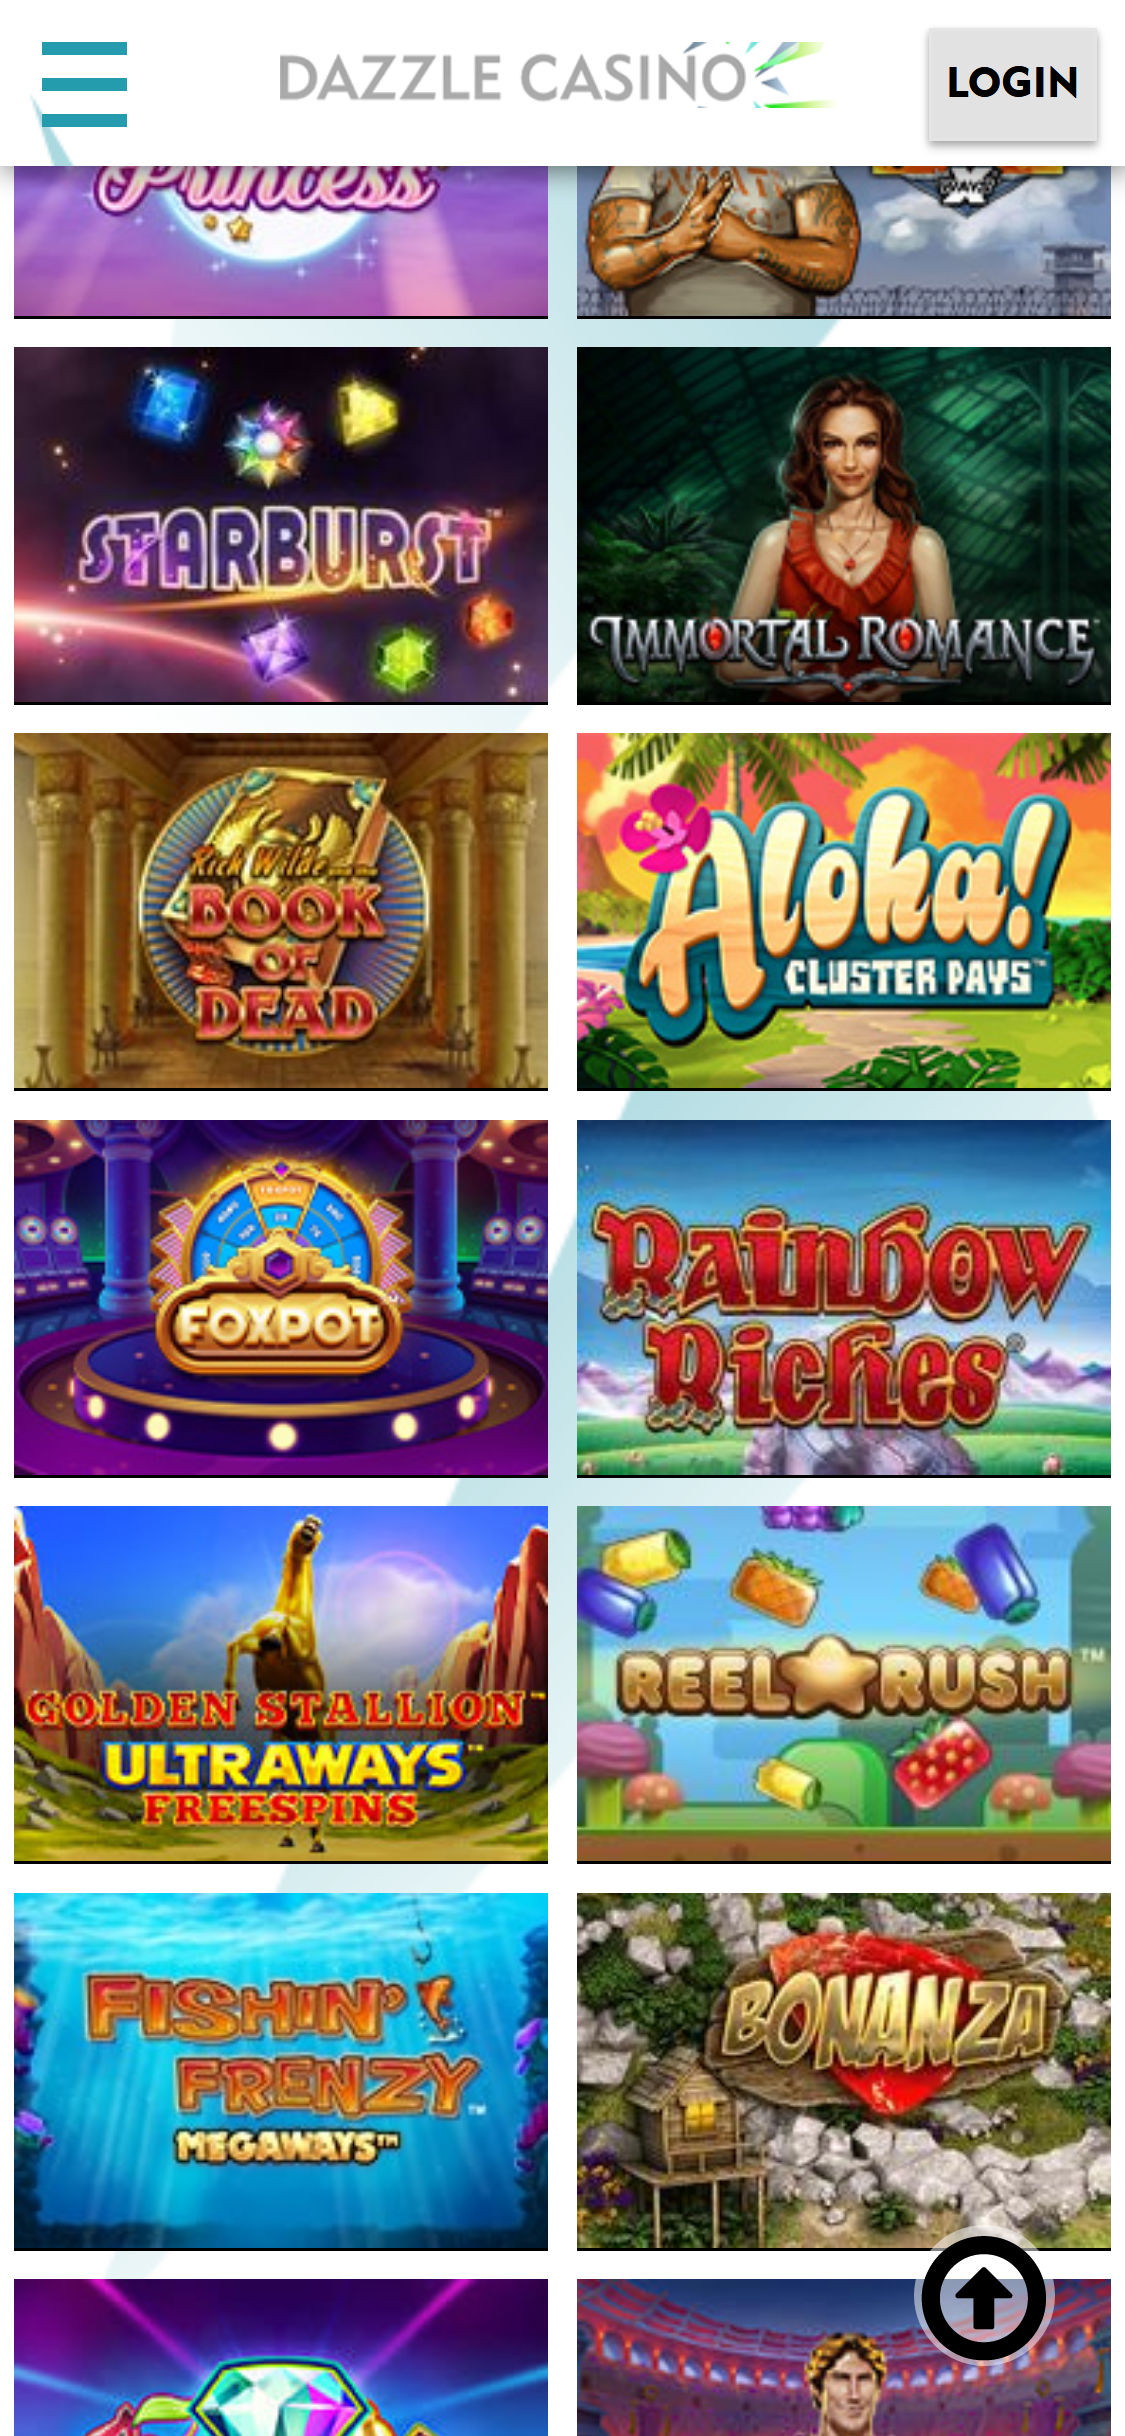 Dazzle Casino Mobile Games Review